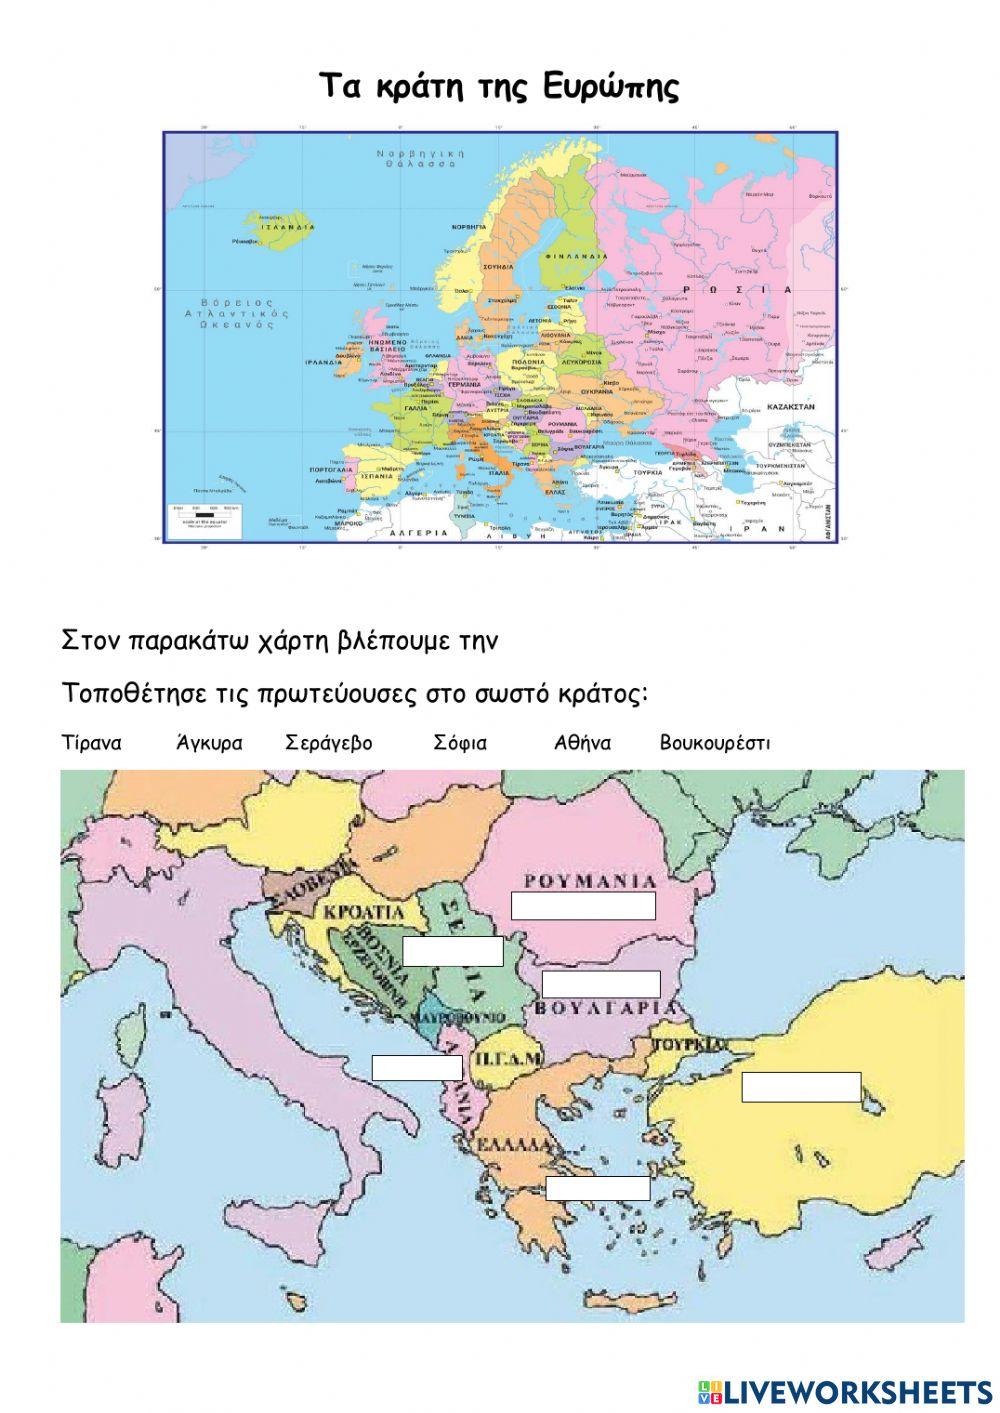 Τα κράτη της Ευρώπης